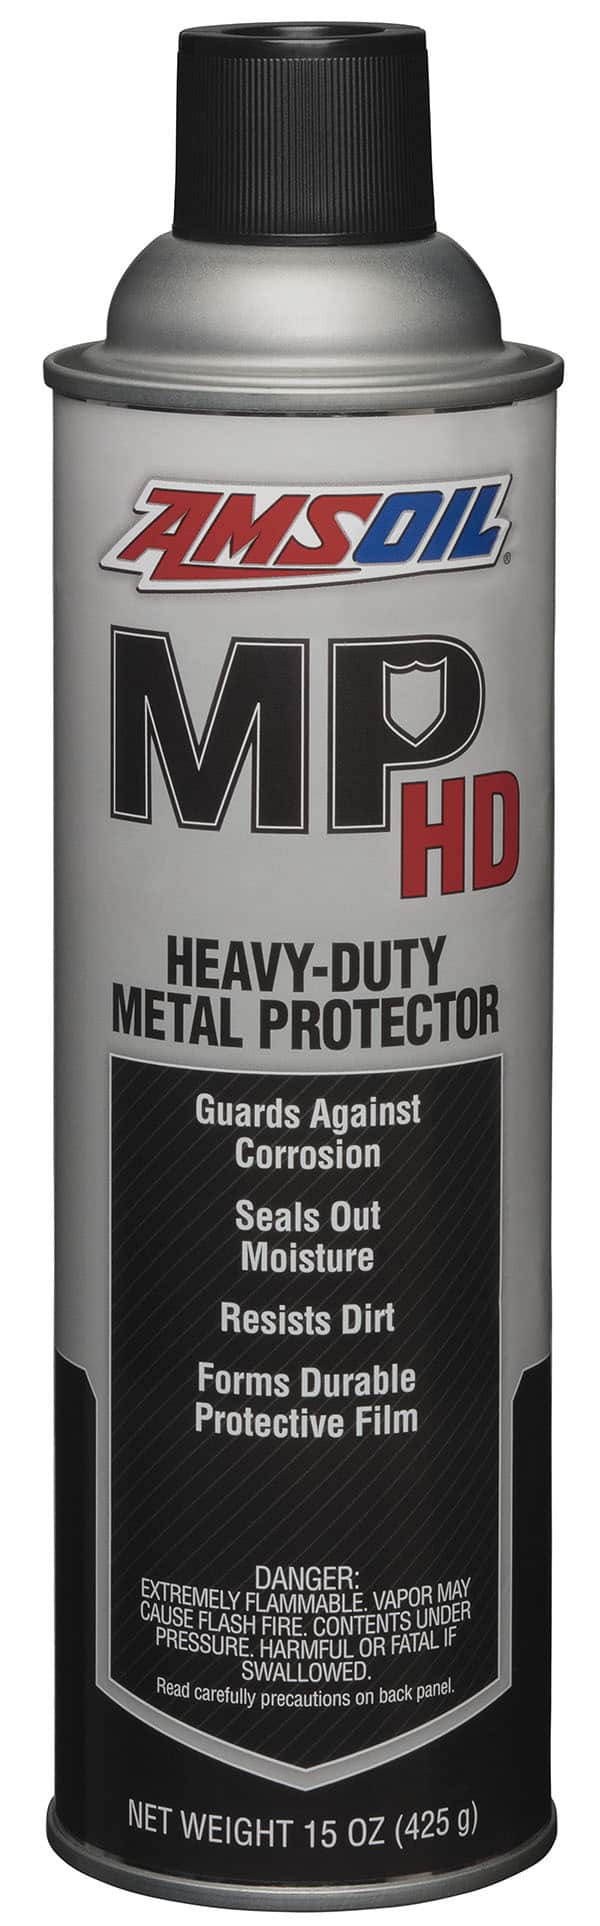 Heavy Duty Metal Protector AMHSC